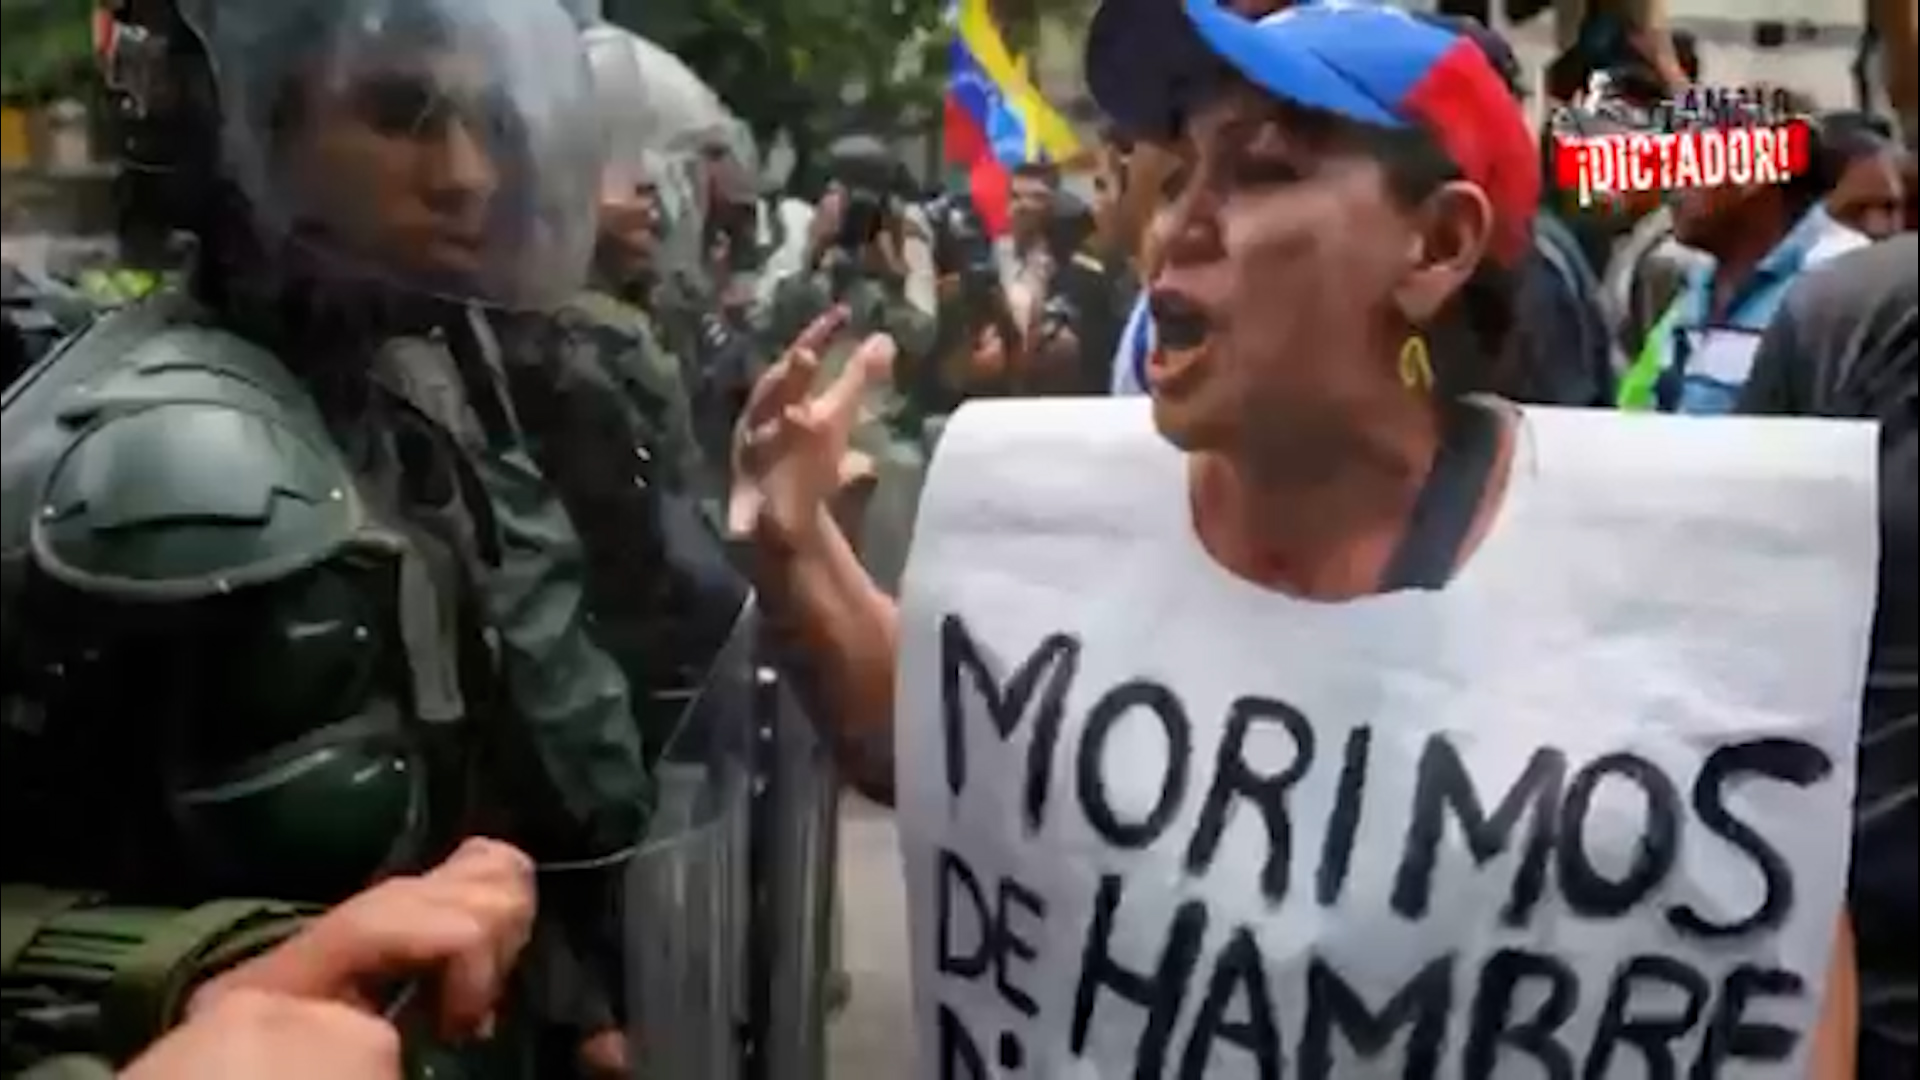 En Latinoamérica el muro todavía no cayó. Los centennials mientras discuten apasionados todo tema desde una perspectiva de género, fueron contemporáneos a una Venezuela colapsando en manos de una nueva dictadura socialista.